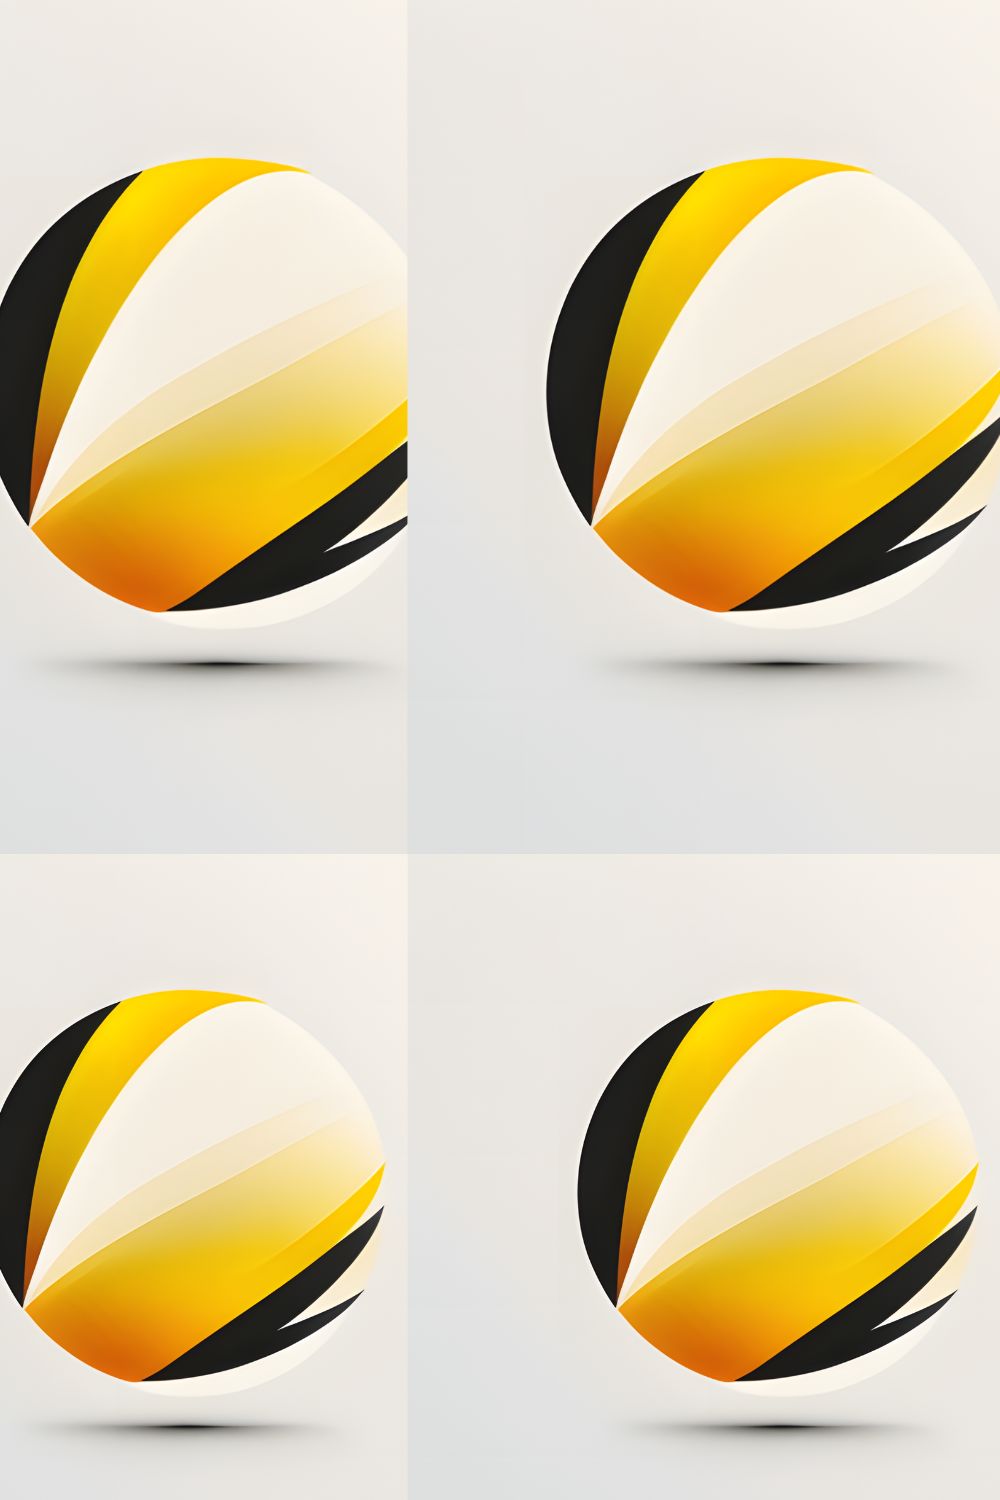 Cricket sports vector logo design template. Cricket ball with wings icon  design. 23515010 Vector Art at Vecteezy